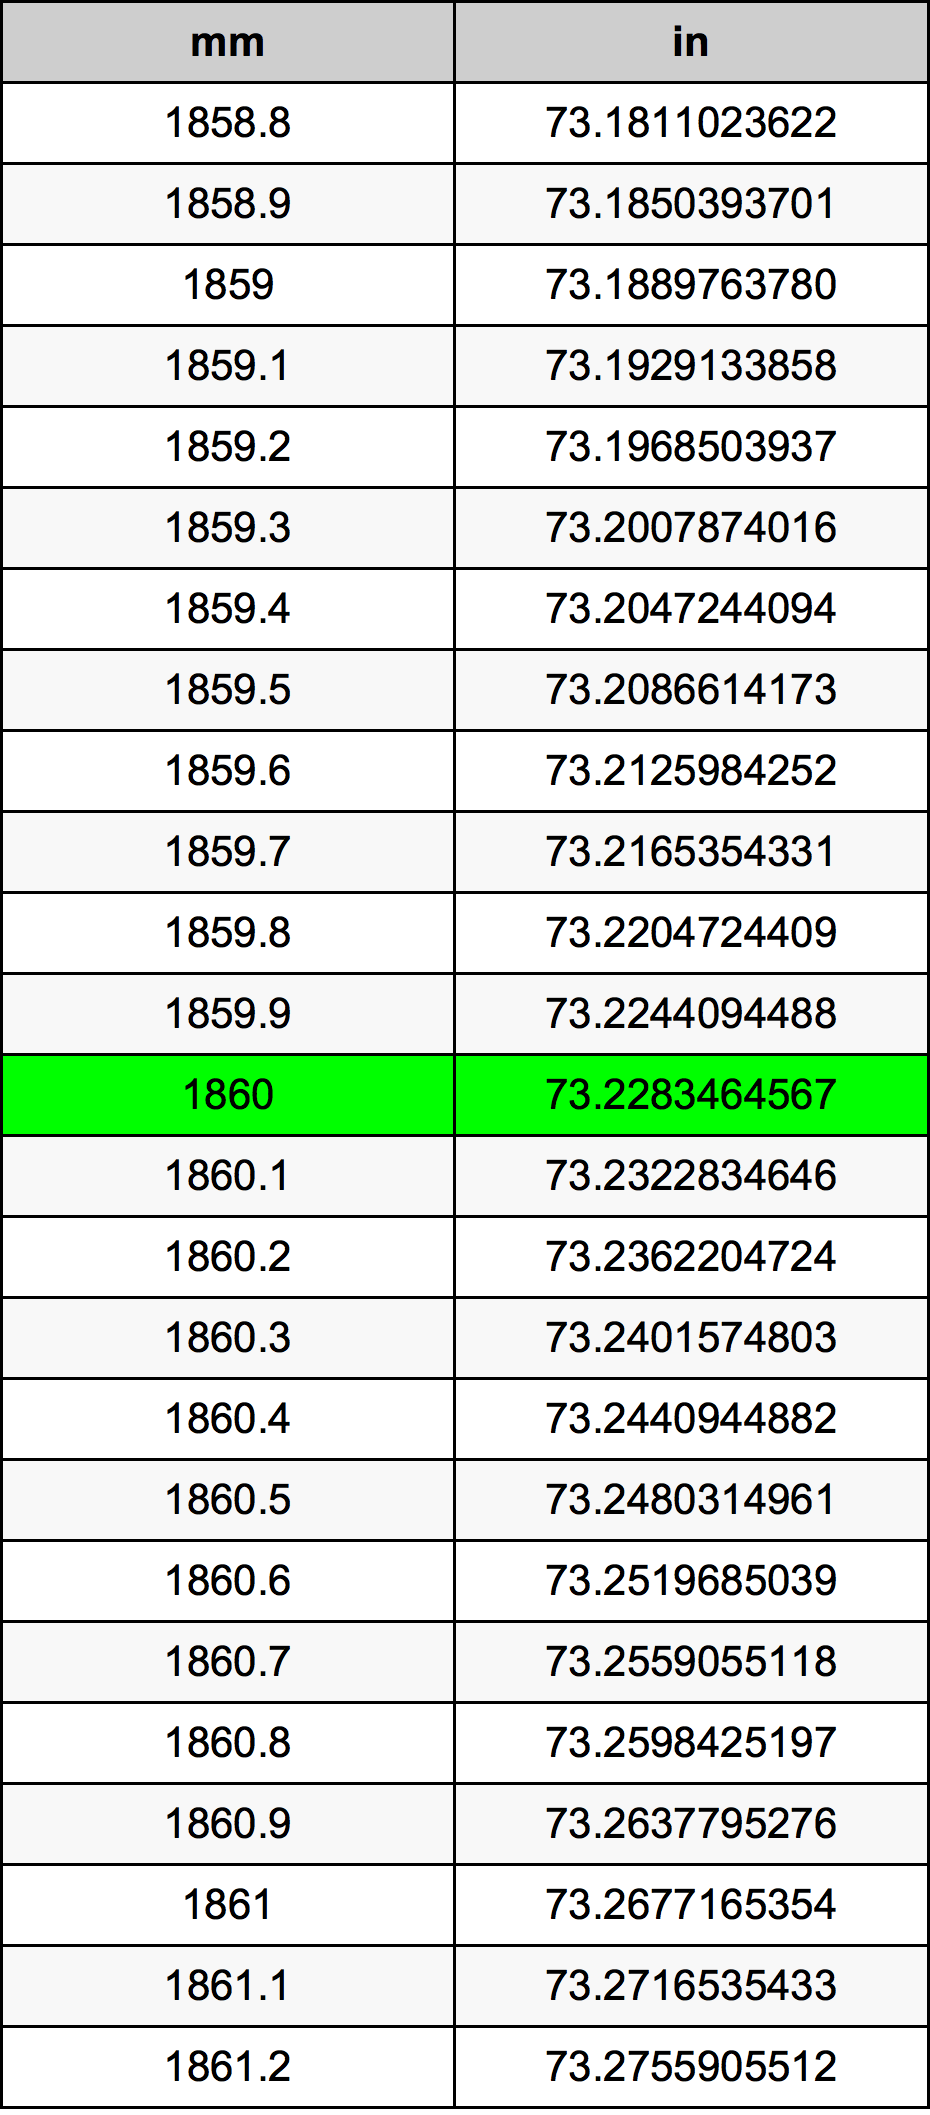 1860 Milimetru tabelul de conversie